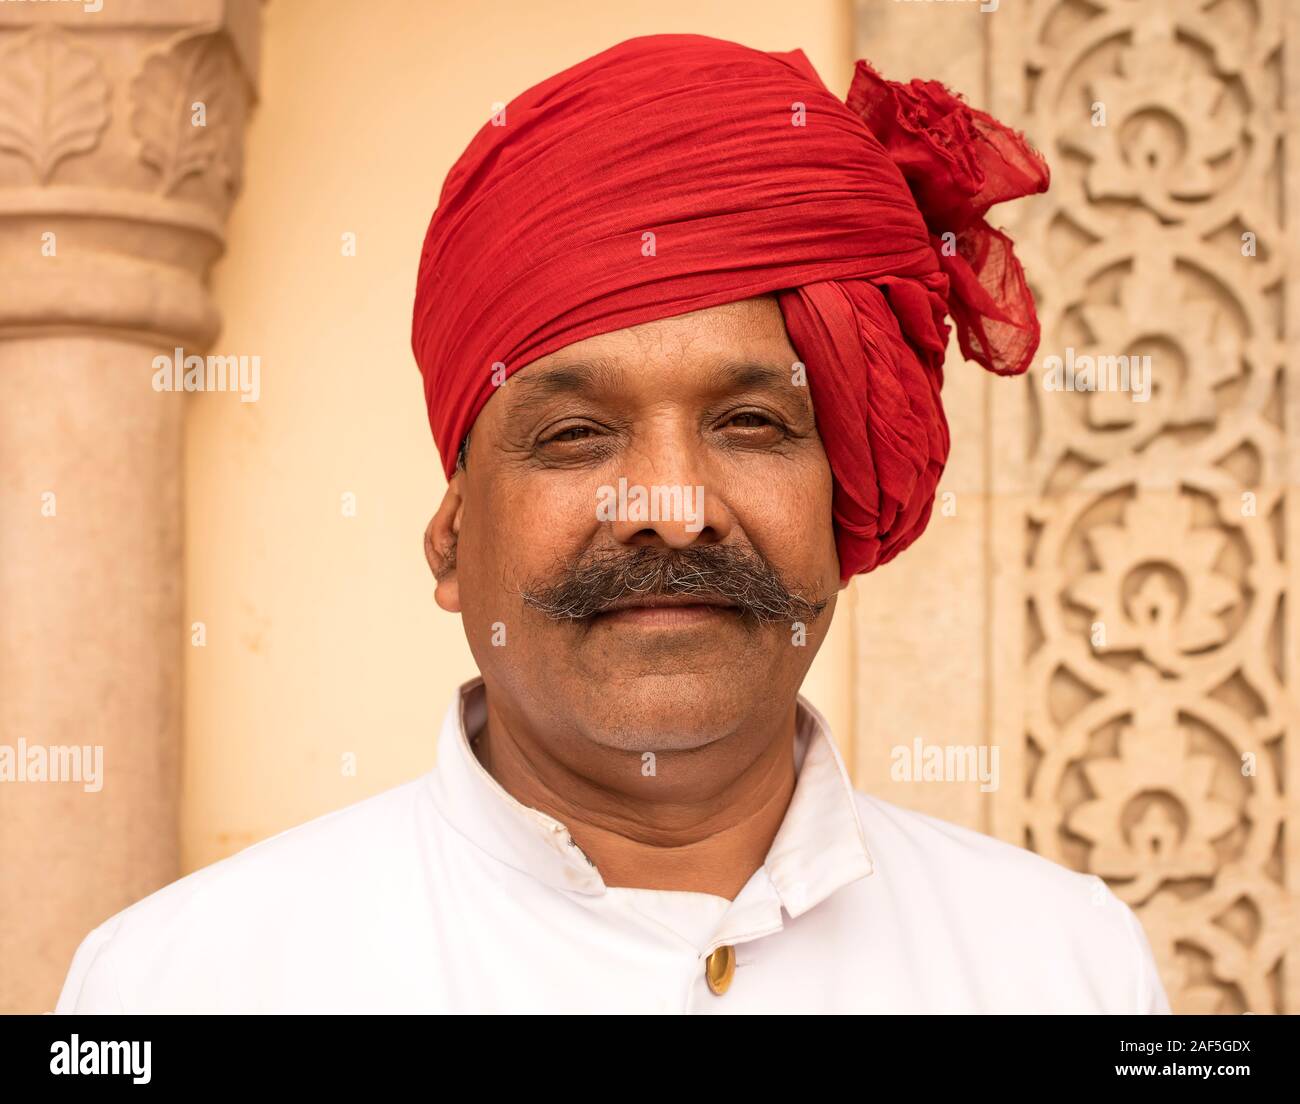 Mann mit roten Turban, Jaipur, Rajasthan, Indien Stockfoto